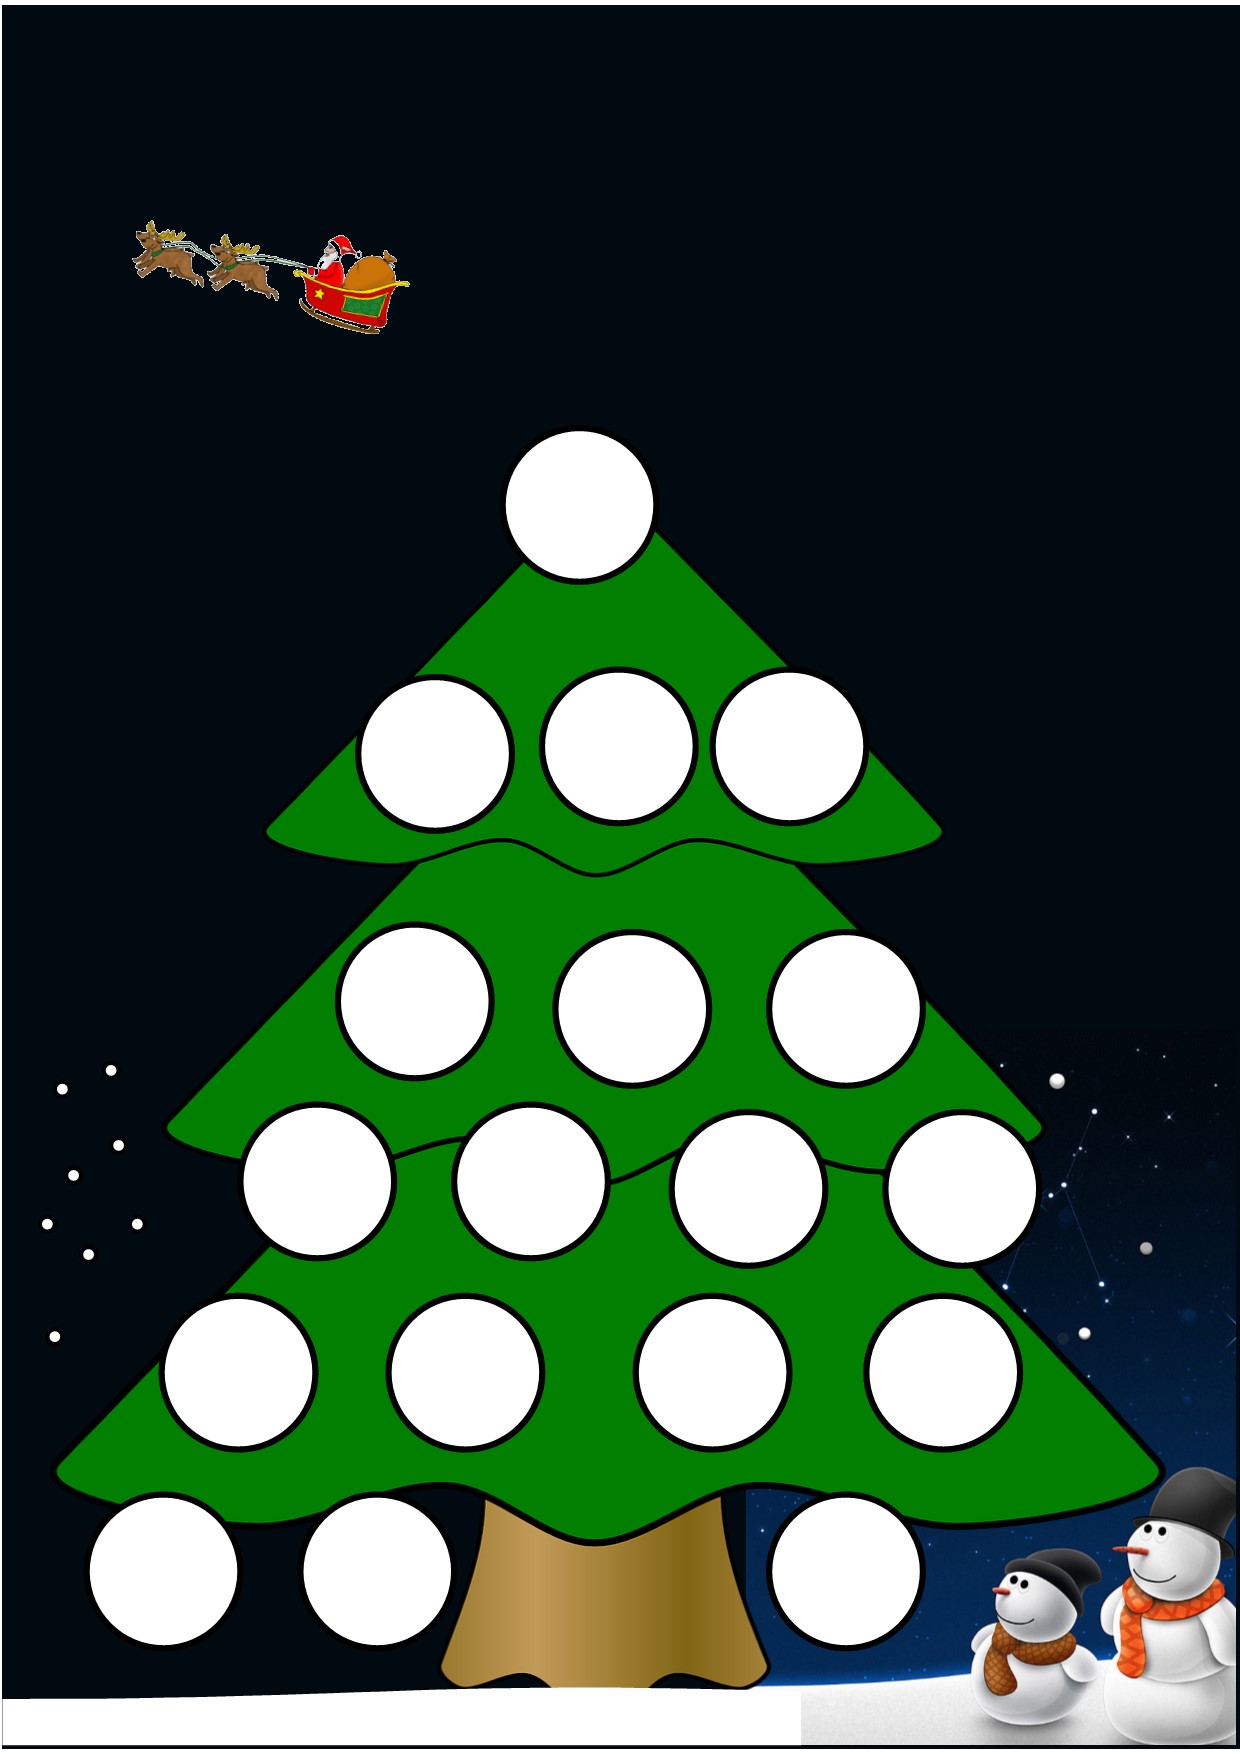 Jeux de mathématiques de Noël